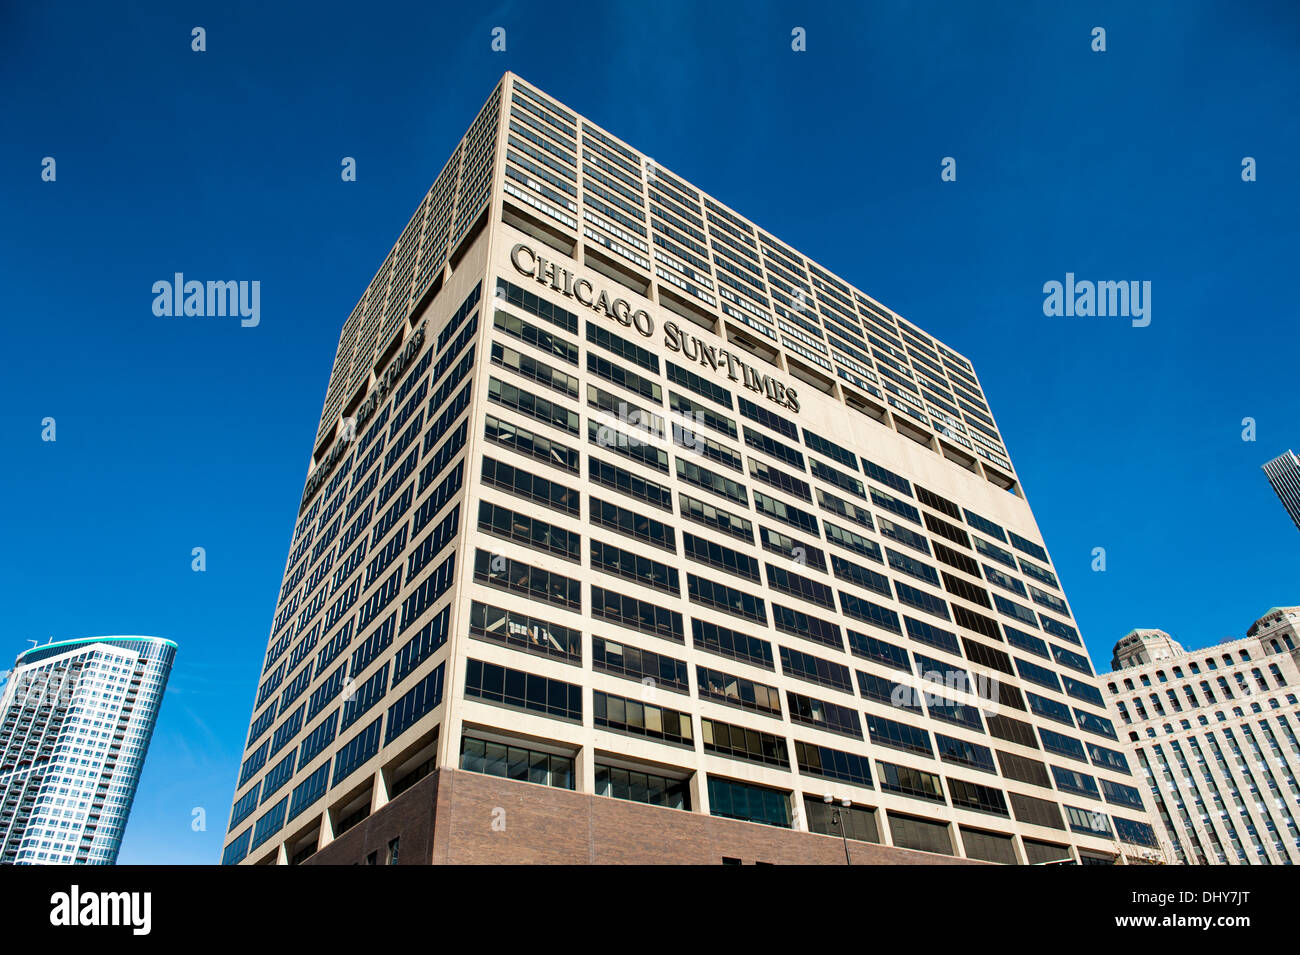 CHICAGO, IL - 13 NOVEMBER: The Chicago Apparel Center ist die aktuelle Heimat der Chicago Sun-Times, gesehen in Chicago, Illinois. Stockfoto